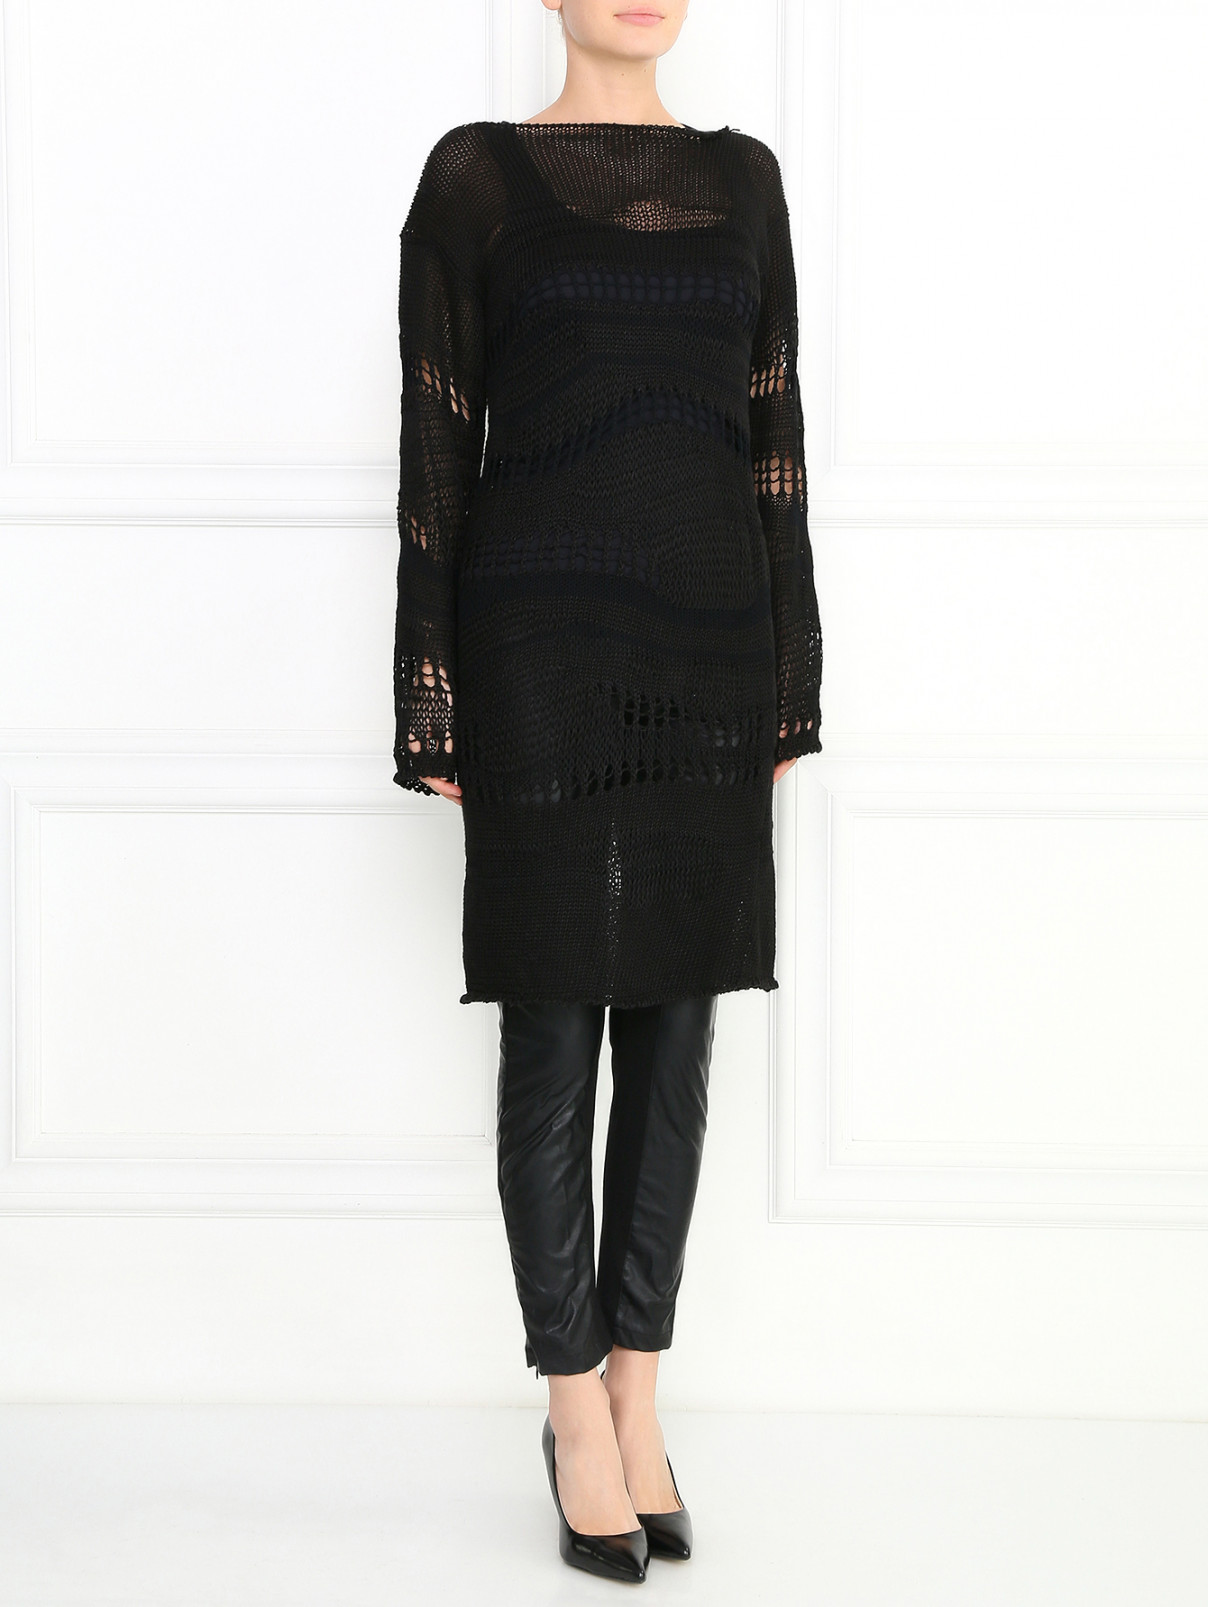 Легкое вязаное платье из вискозы и льна Jean Paul Gaultier  –  Модель Общий вид  – Цвет:  Черный